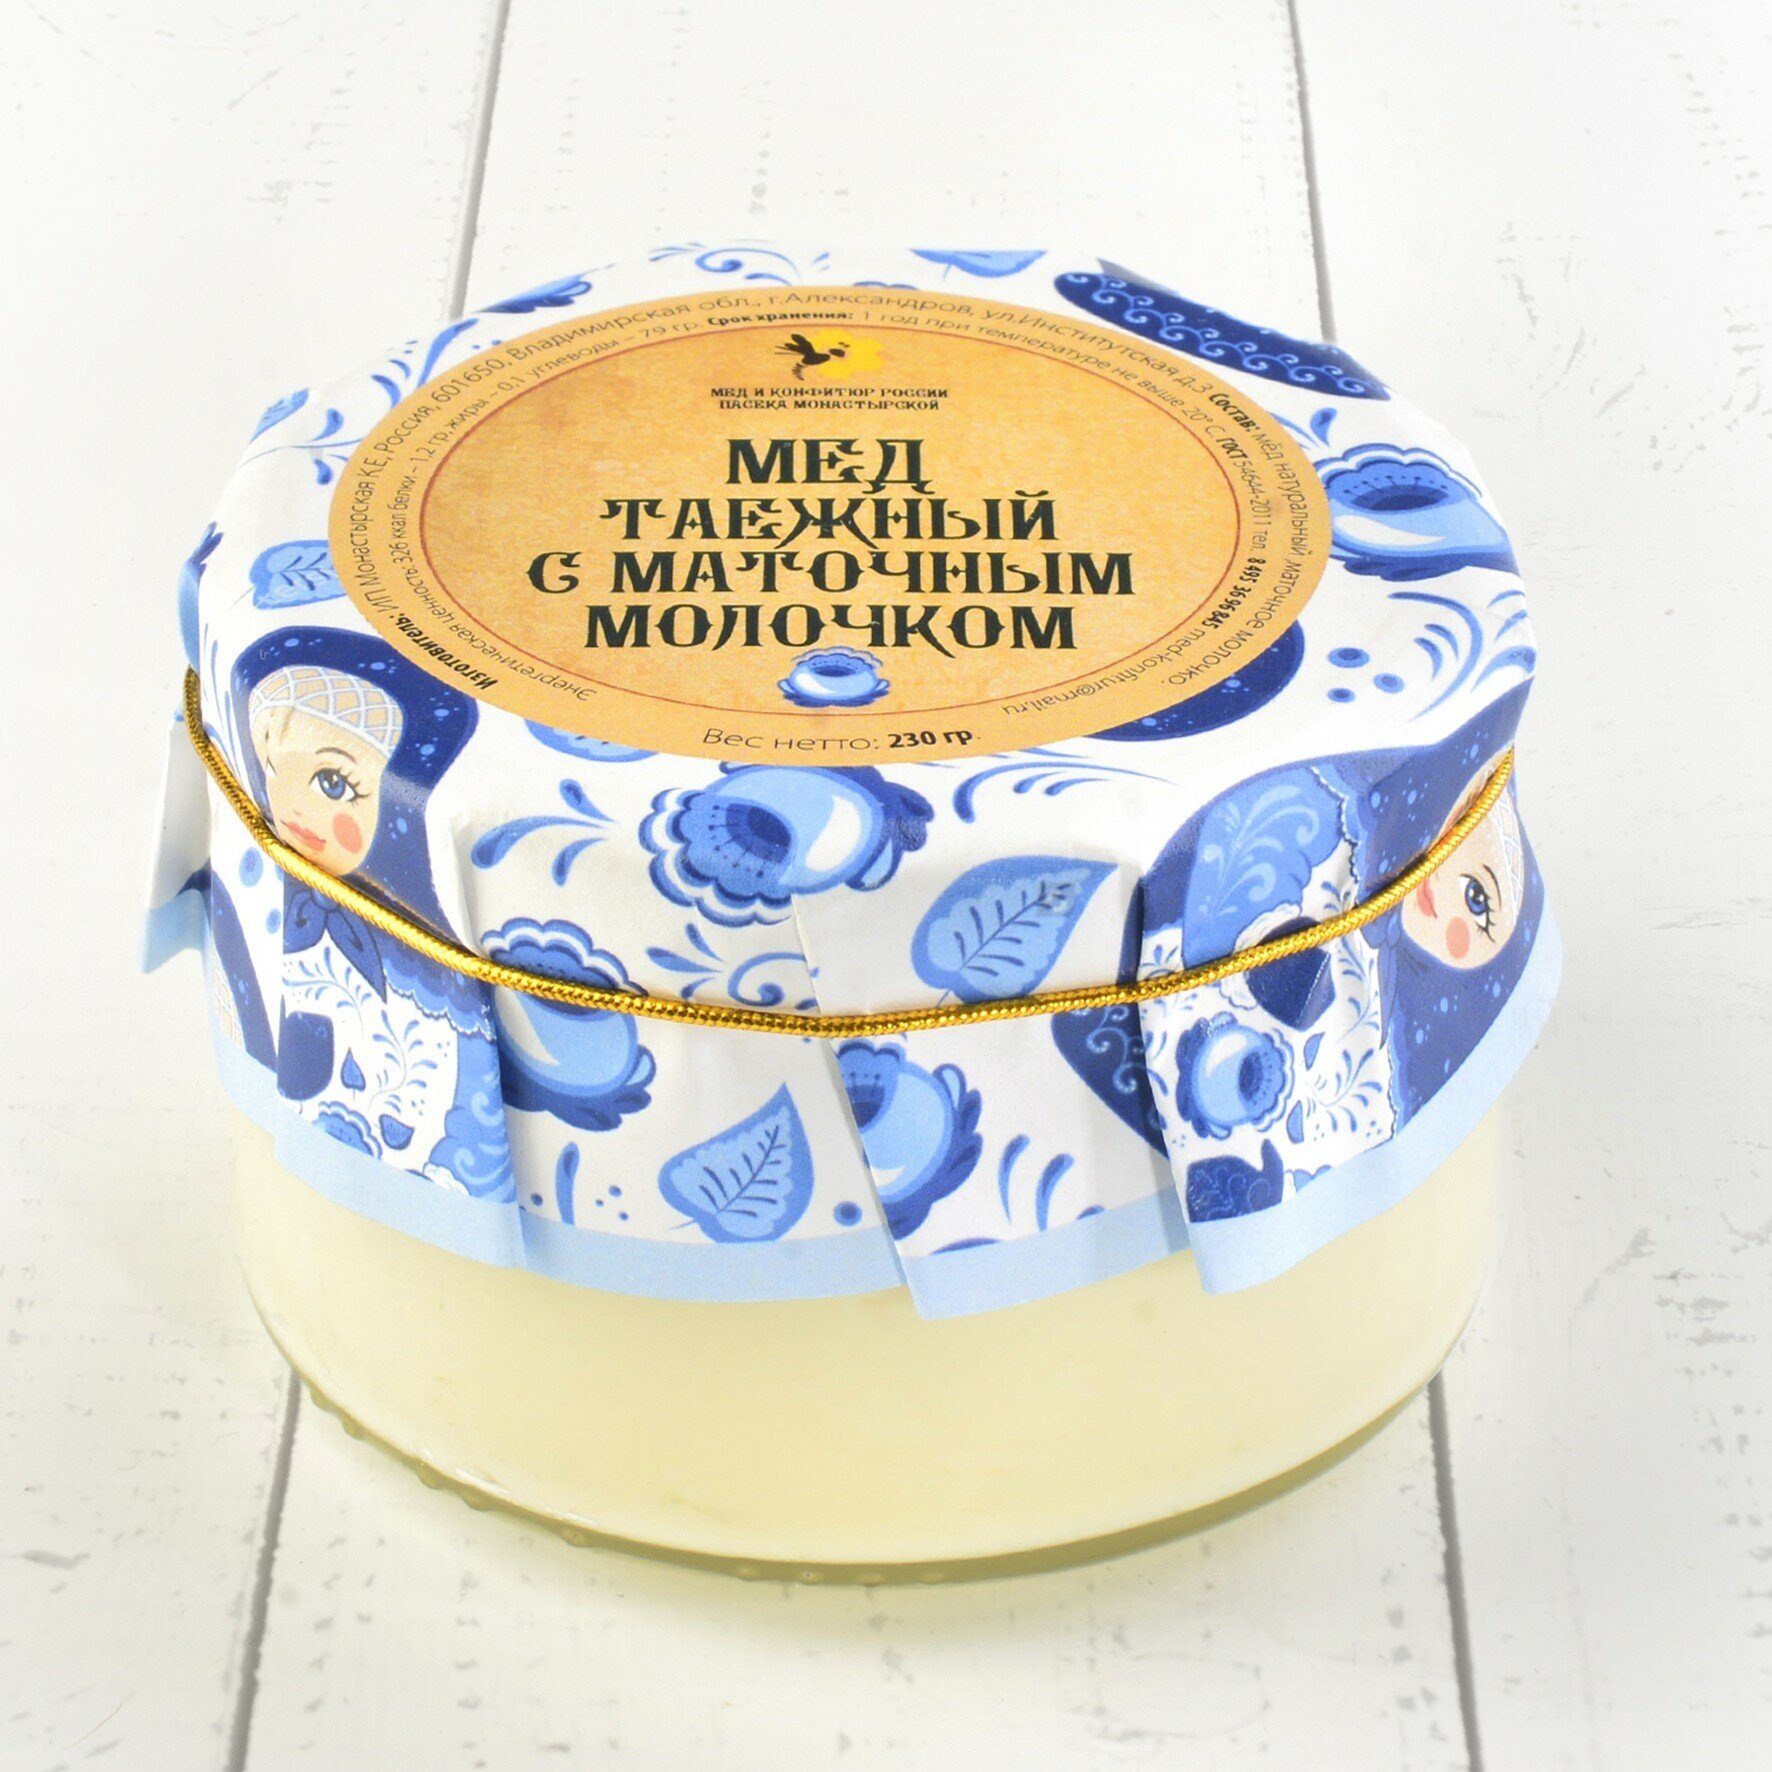 Крем-мёд таёжный с маточным молочком "Русский стиль" 230 гр. - фотография № 2